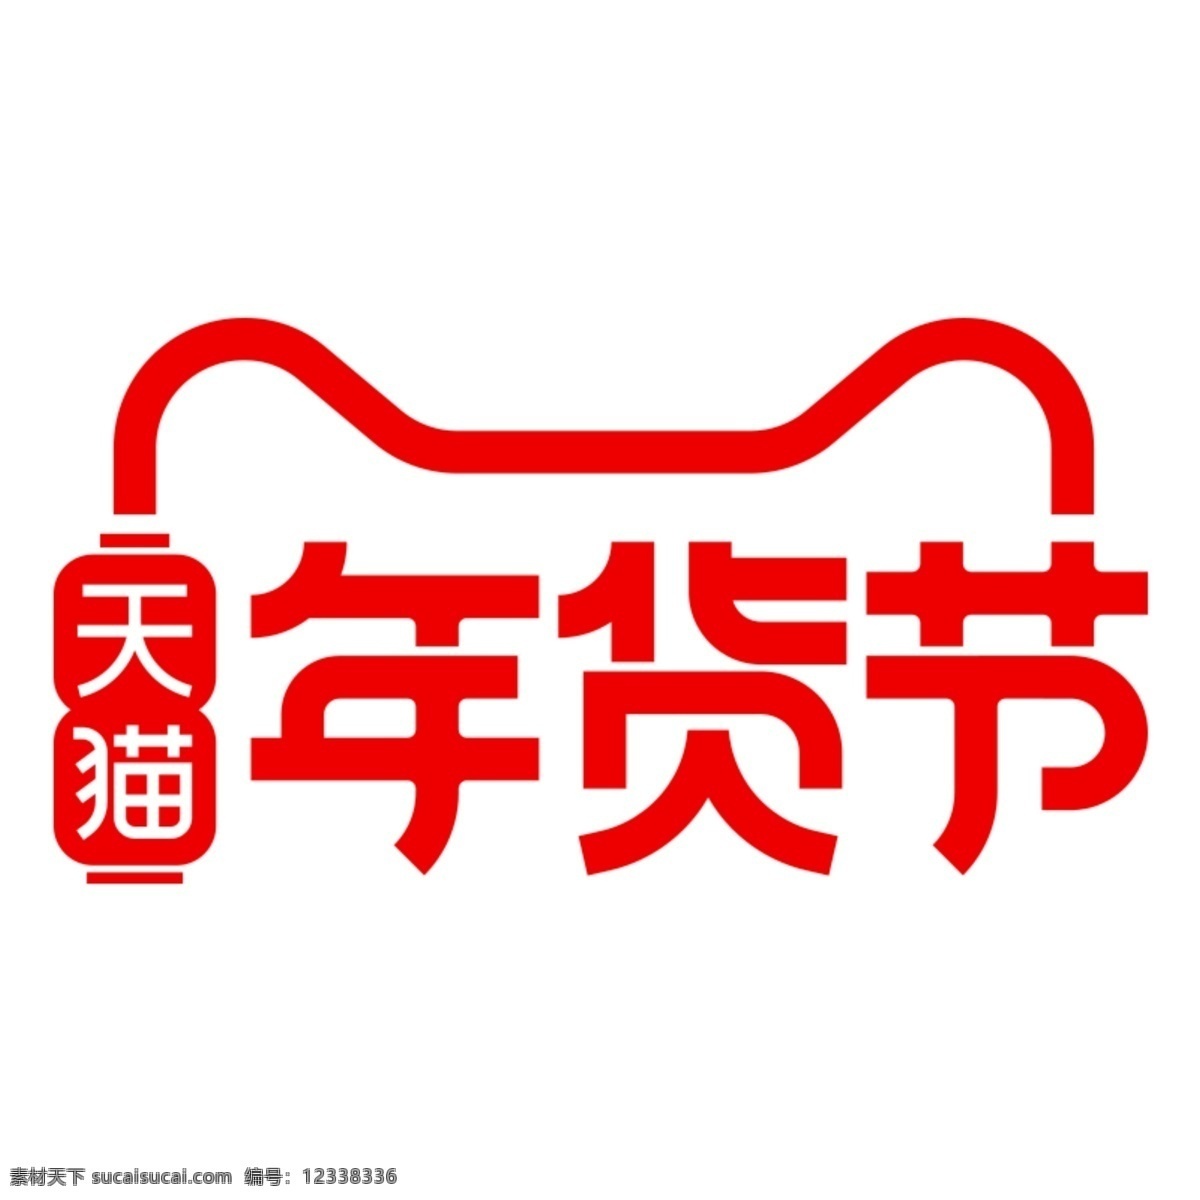 2020 年 天猫 年货 节 logo 2020年 天猫年货节 年货节 淘宝年货节 天猫logo 腊八粥 腊八节 活动海报 logo设计